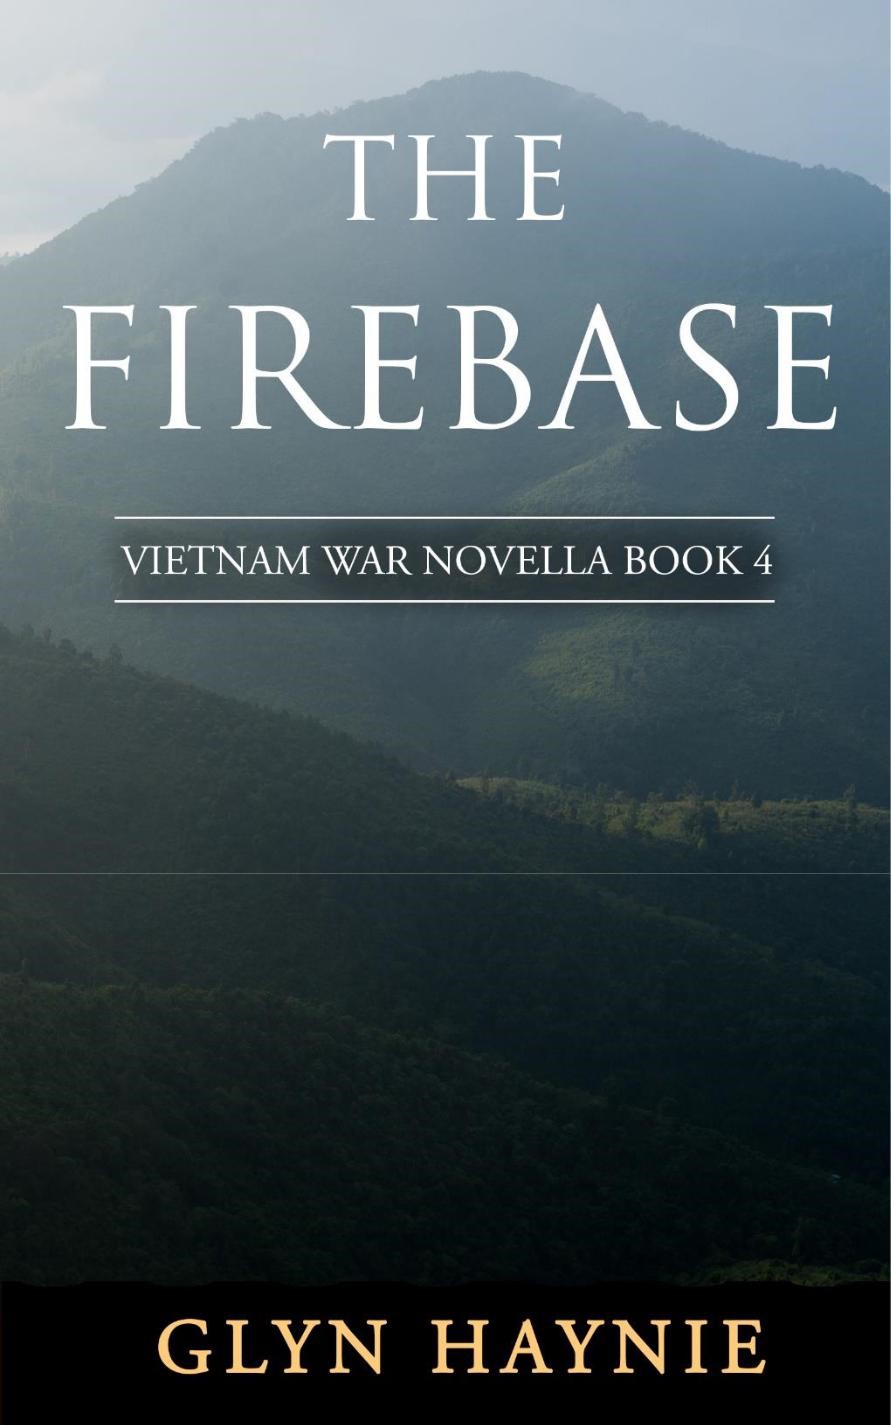 The Firebase by Glyn Haynie